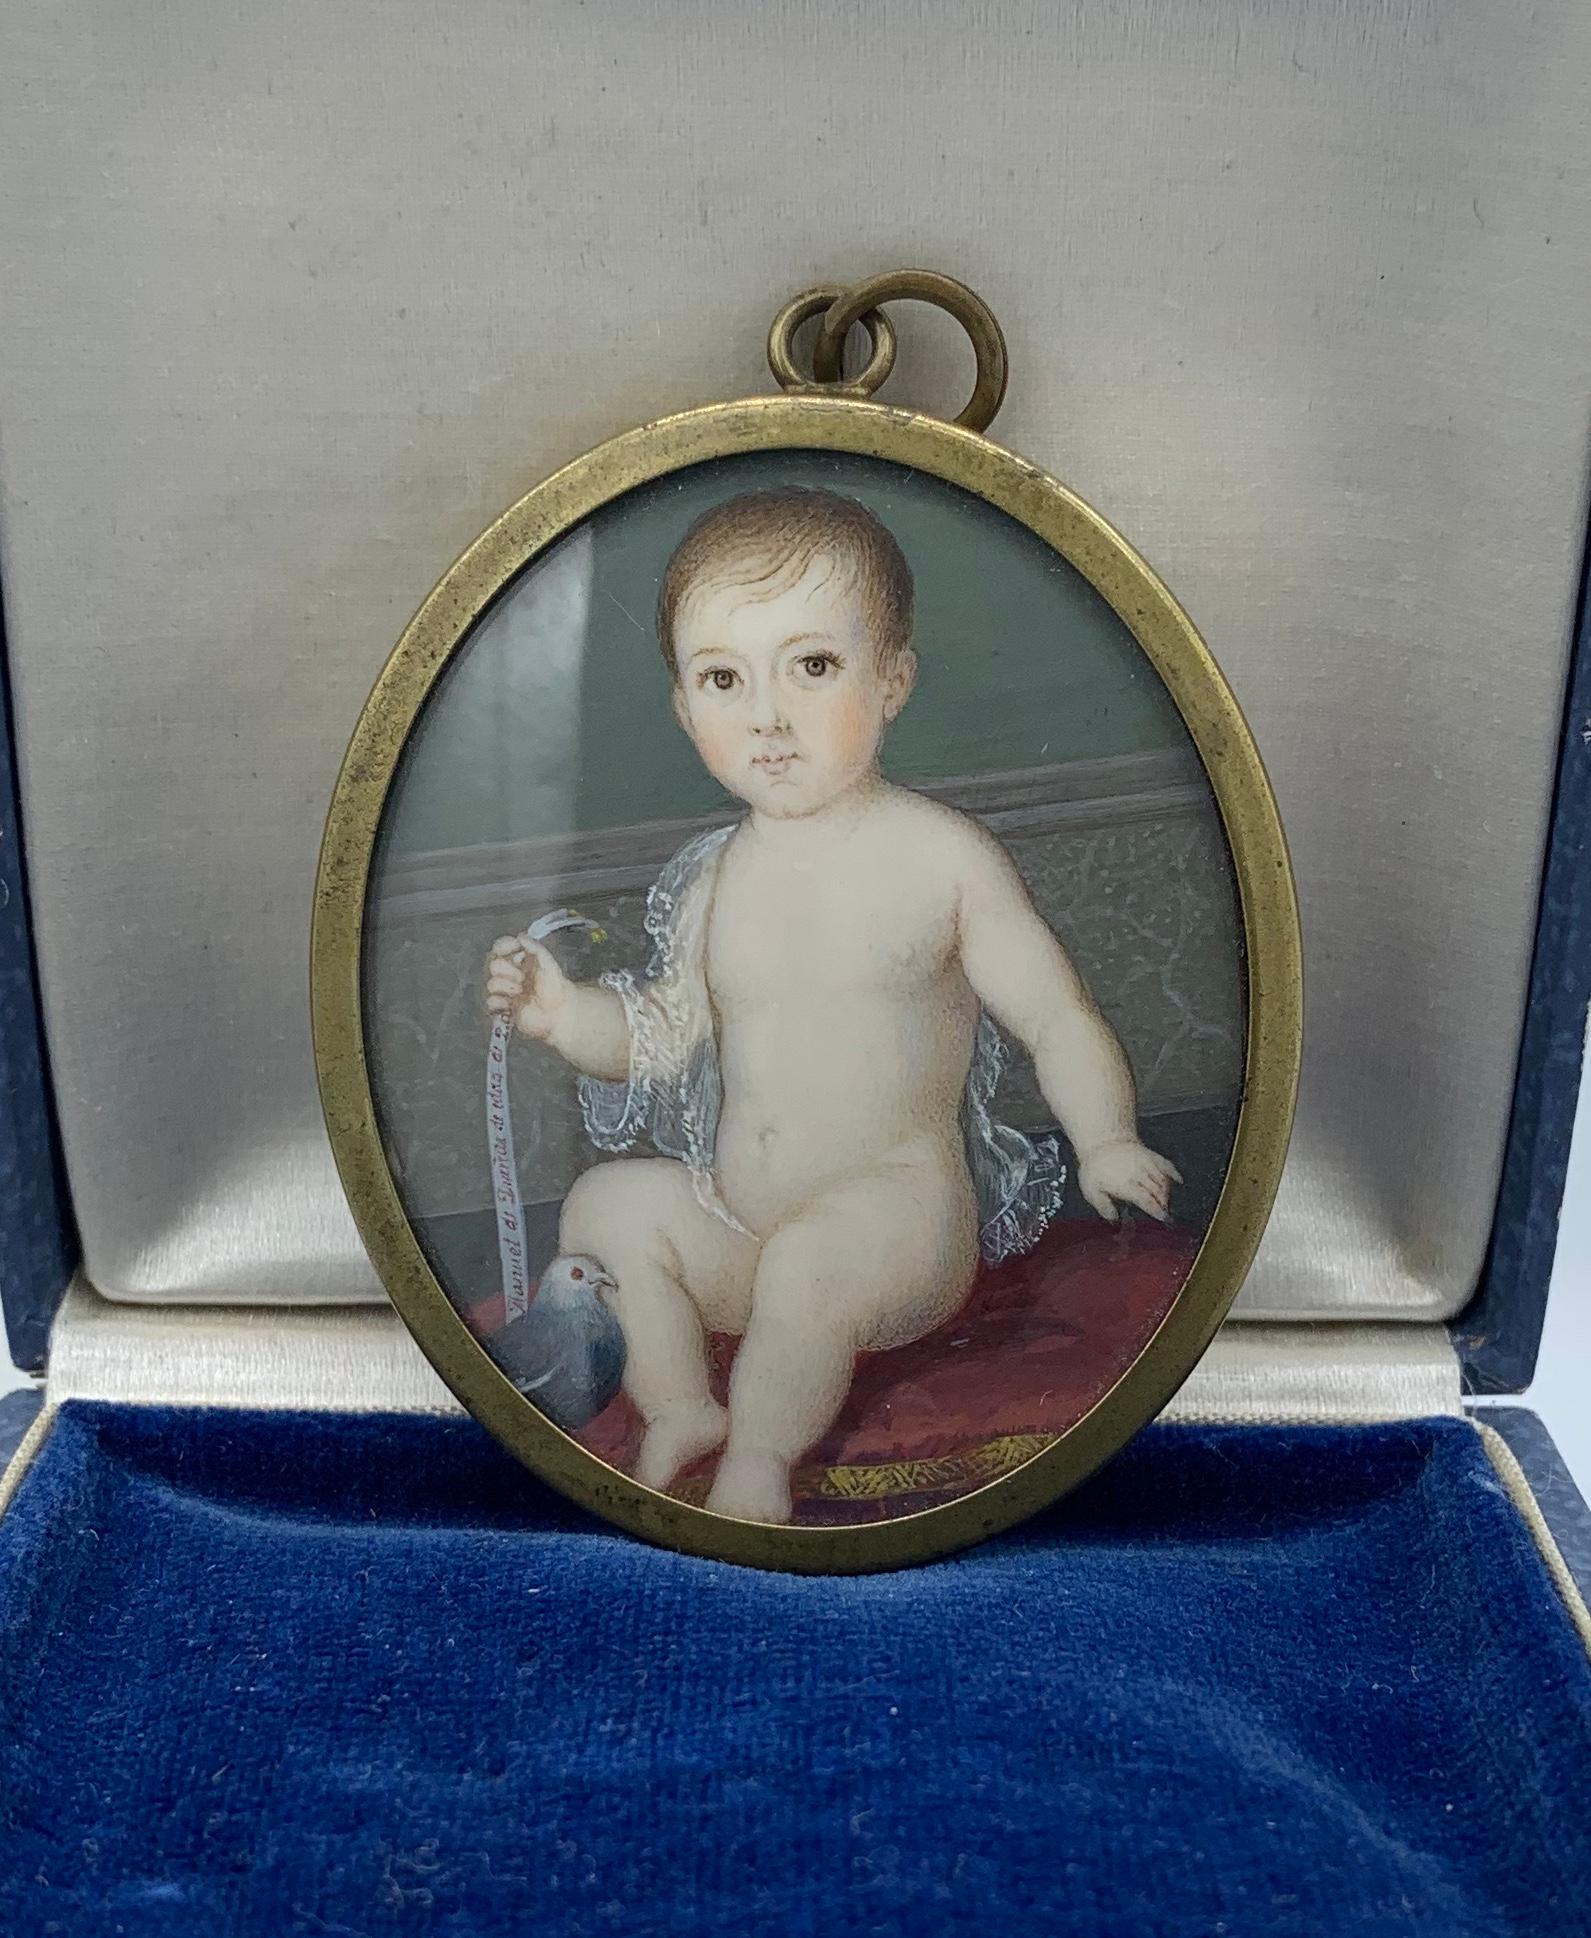 Dies ist eine sehr frühe und seltene Museum Qualität Georgian Locket Anhänger Halskette mit einem außergewöhnlichen handgemalten Porträt Miniatur eines Kindes mit einer Taube Vogel.  Die Porträtminiatur ist von höchster Qualität.  Das Gesicht des